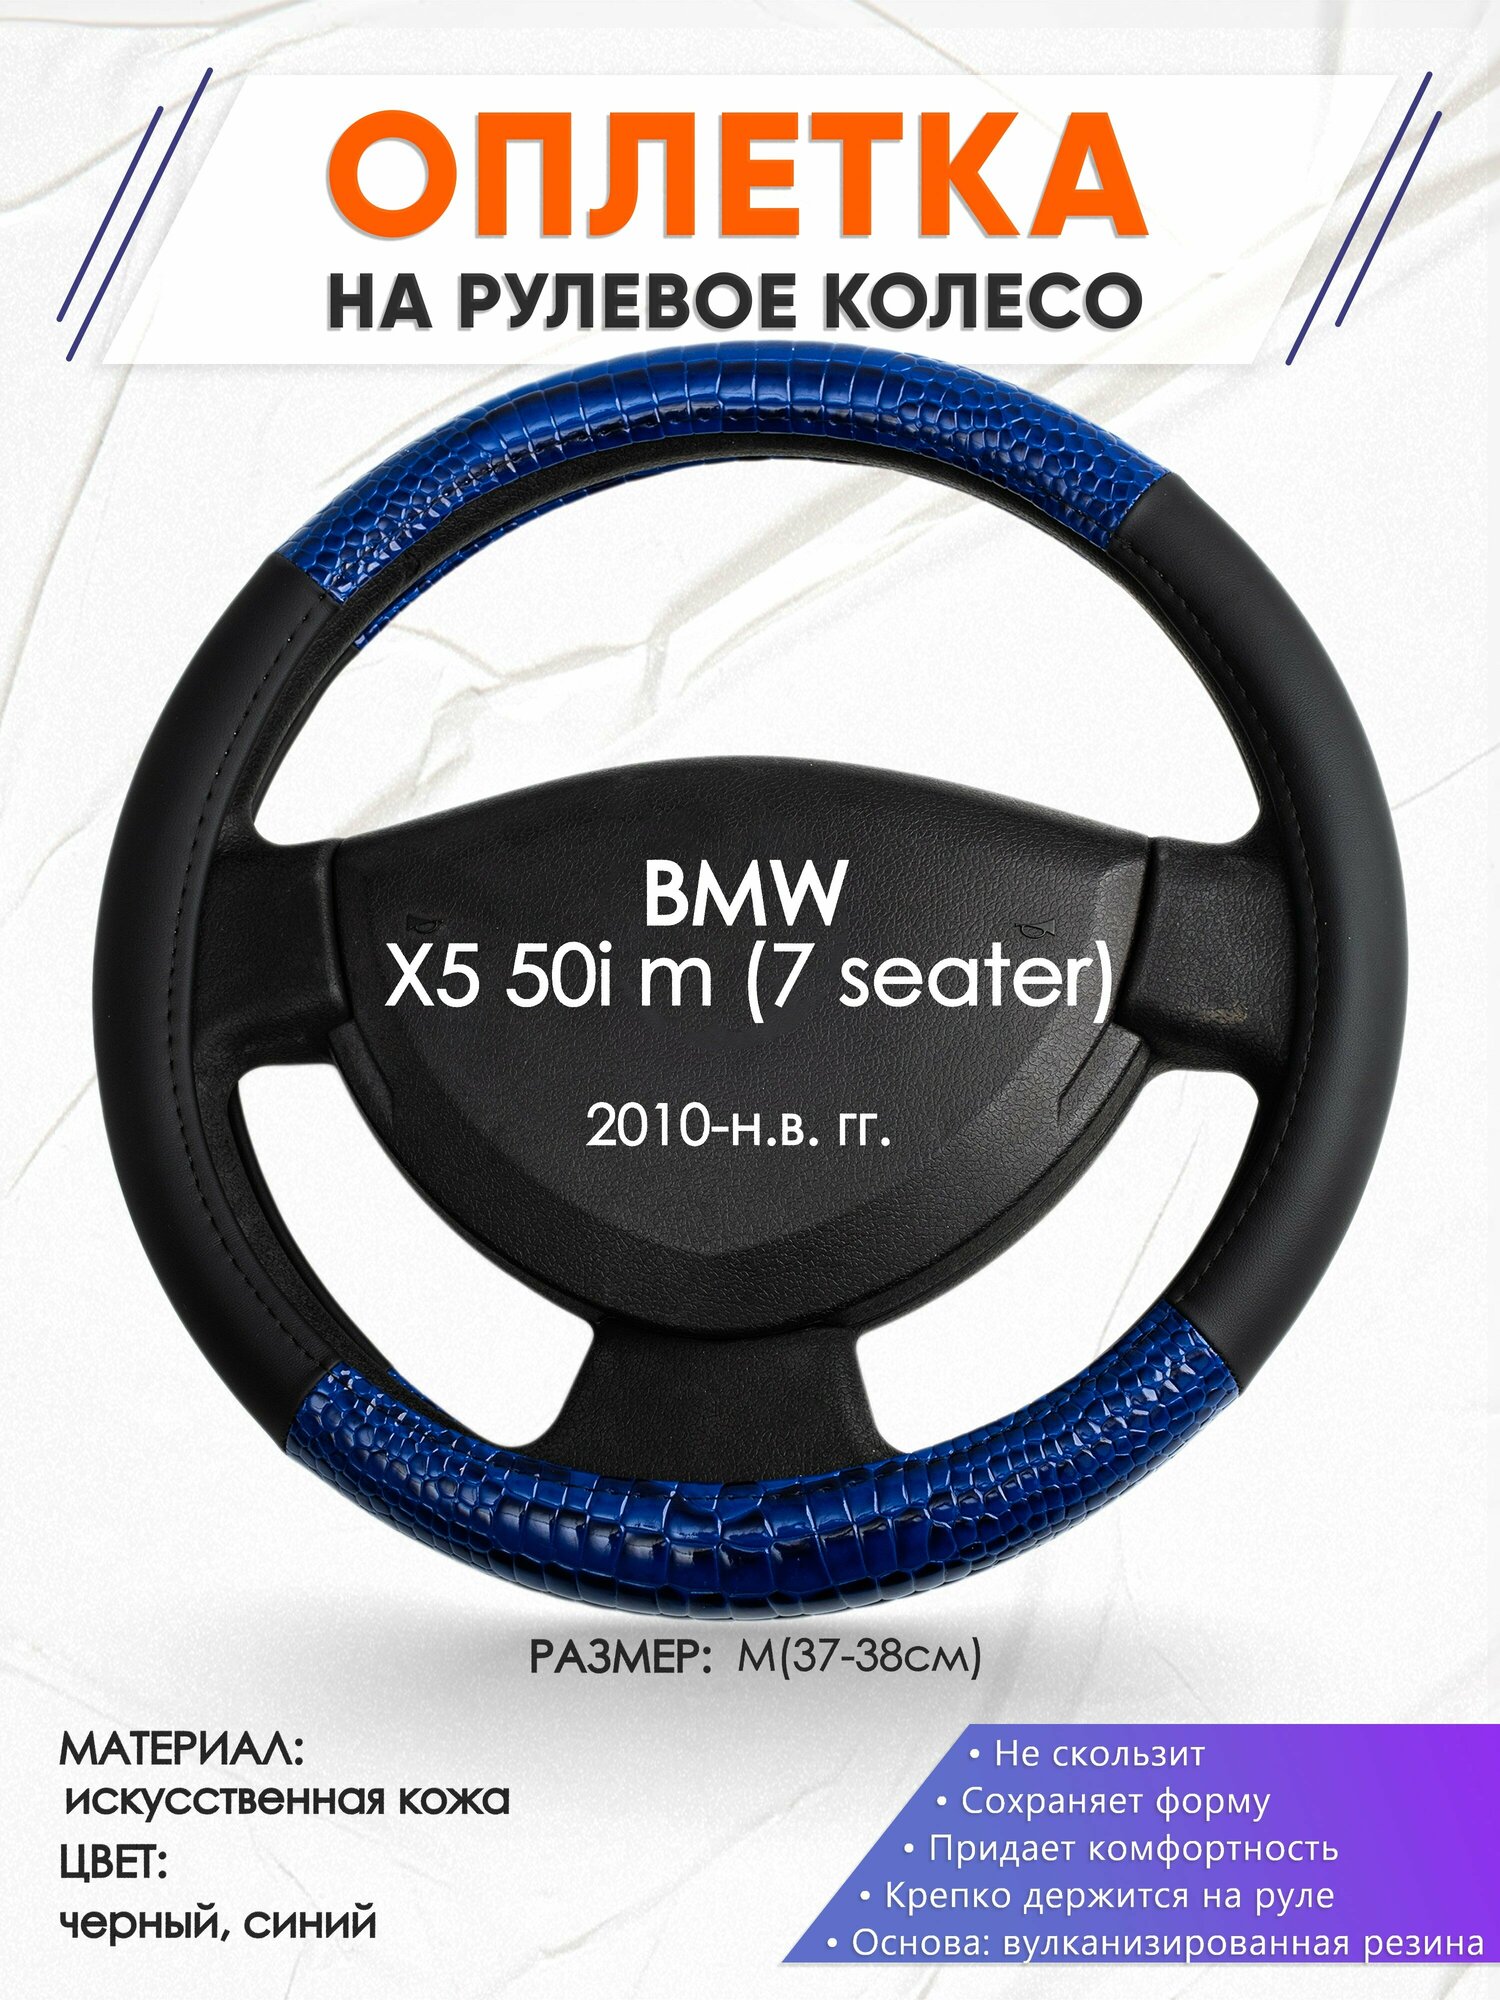 Оплетка наруль для BMW X5 50i m (7 seater)(Бмв икс5) 2010-н. в. годов выпуска, размер M(37-38см), Искусственная кожа 82